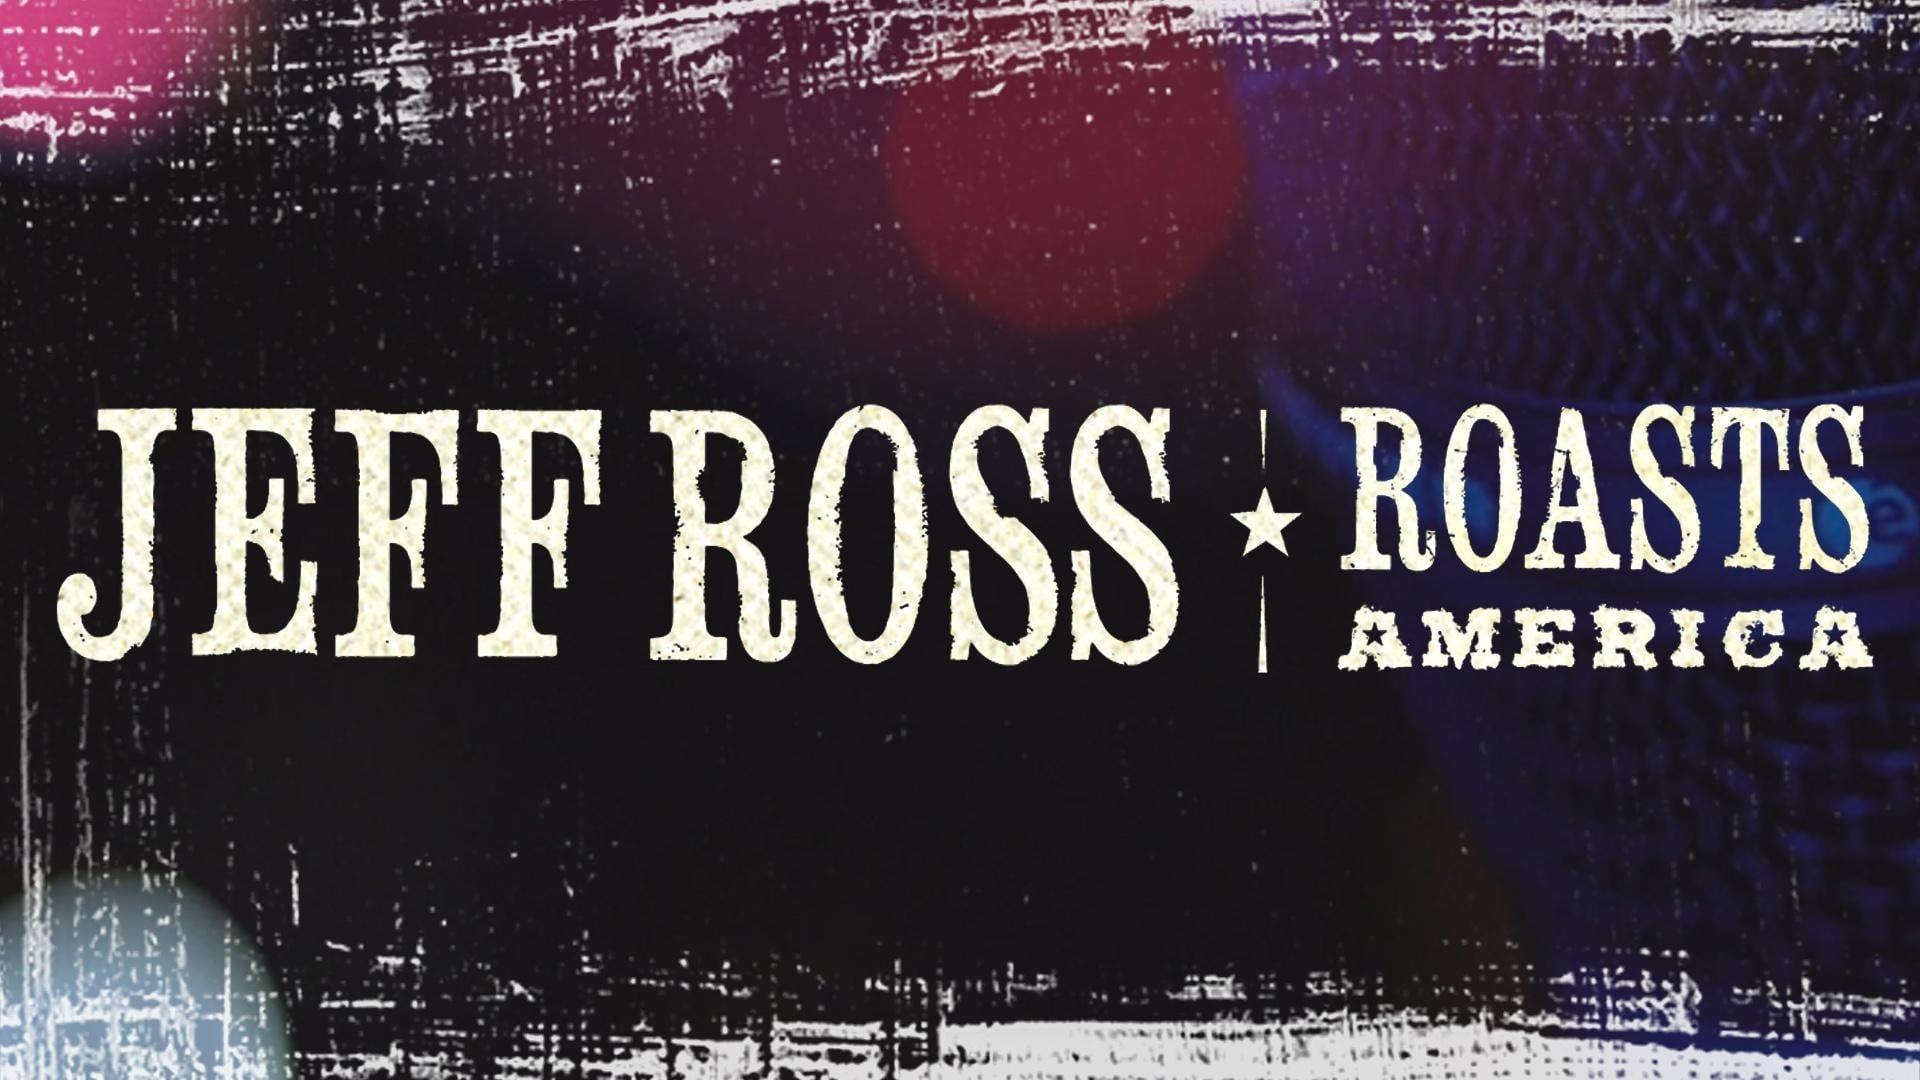 Jeff Ross Roasts America backdrop